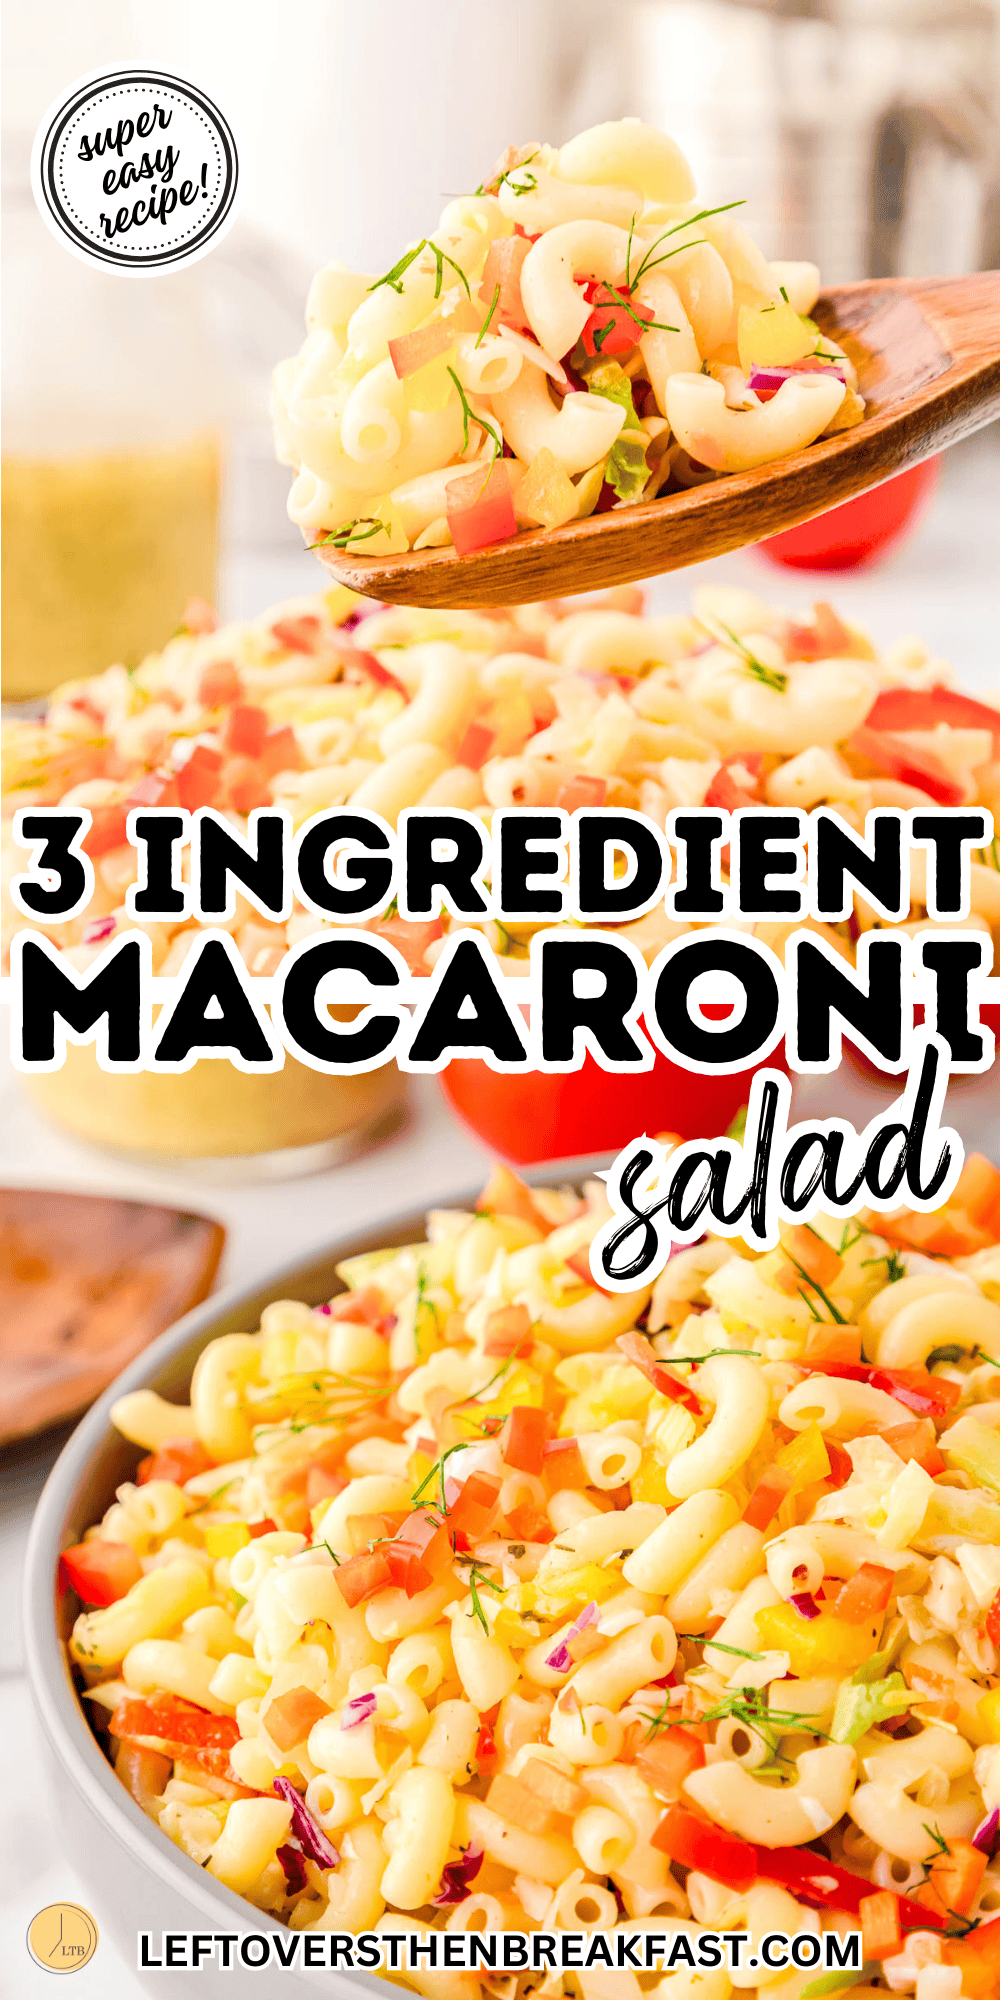 3 ingredient macaroni salad recipe collage